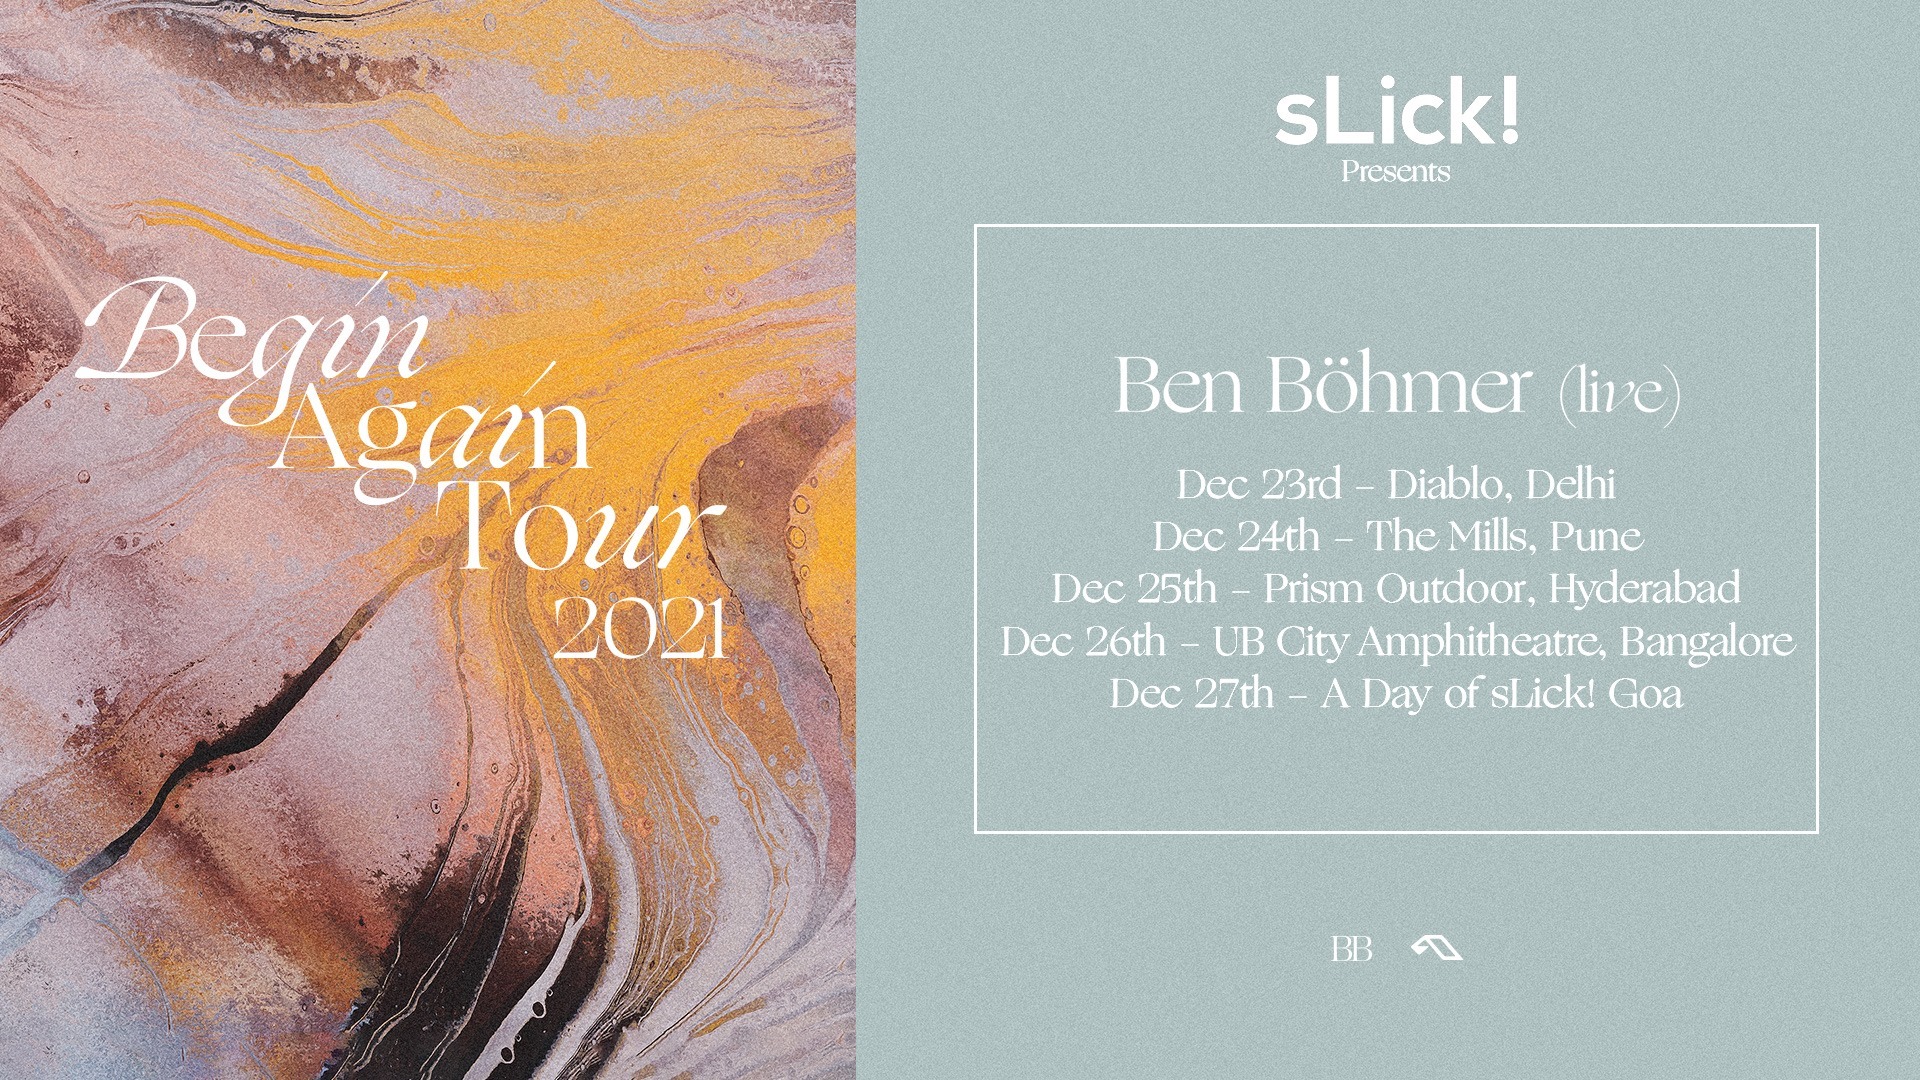 Ben Bohmer (Live) Begin Again Tour Goa GigHub